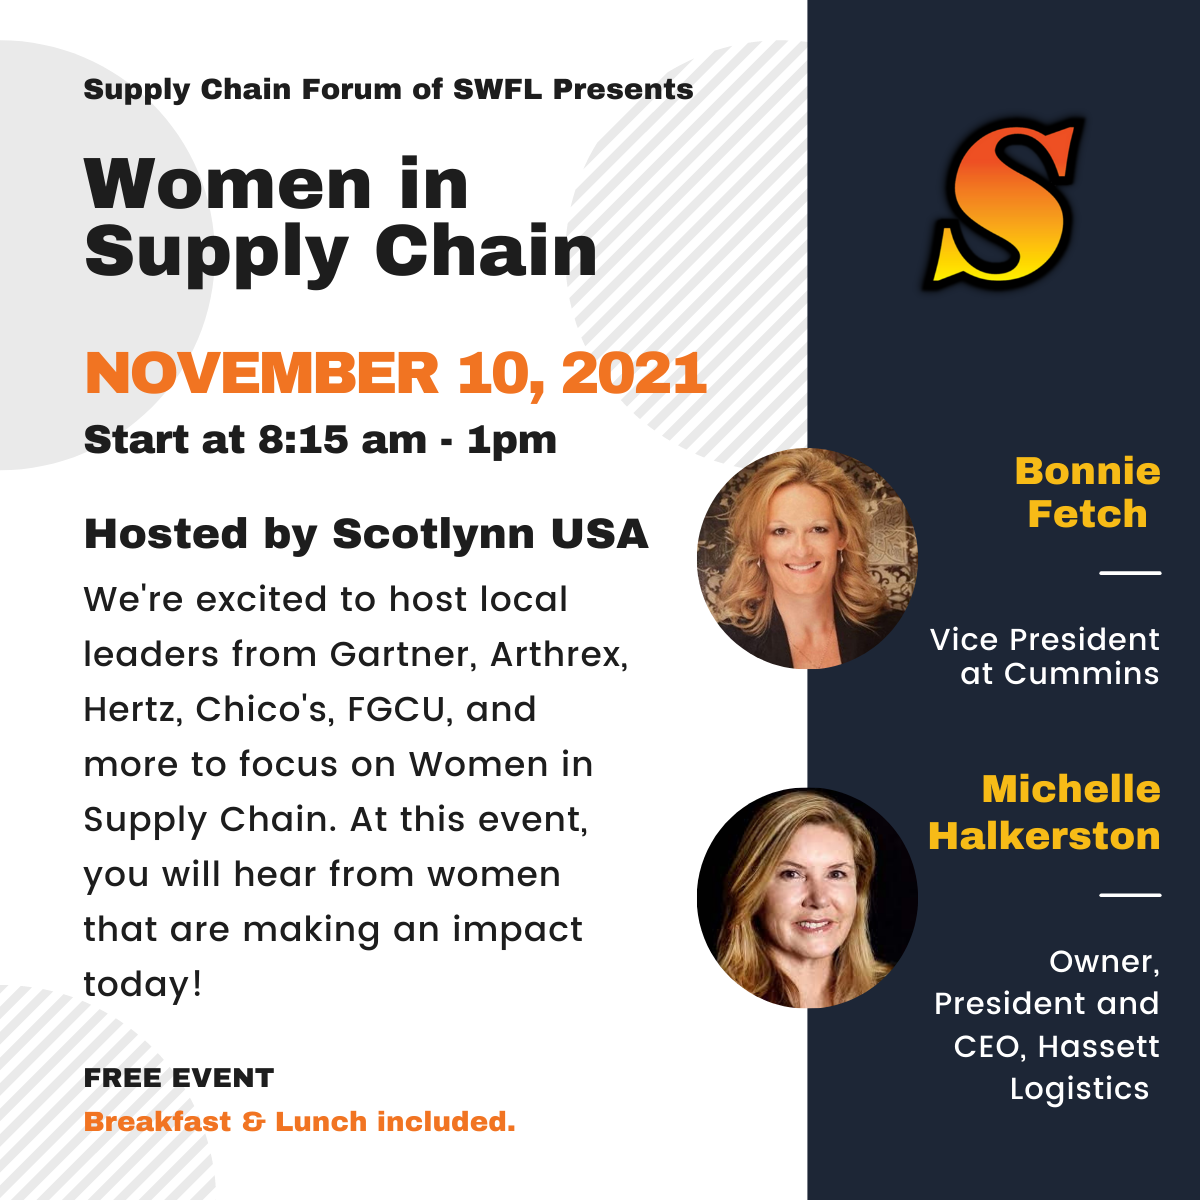 Women in Supply Chain Forum